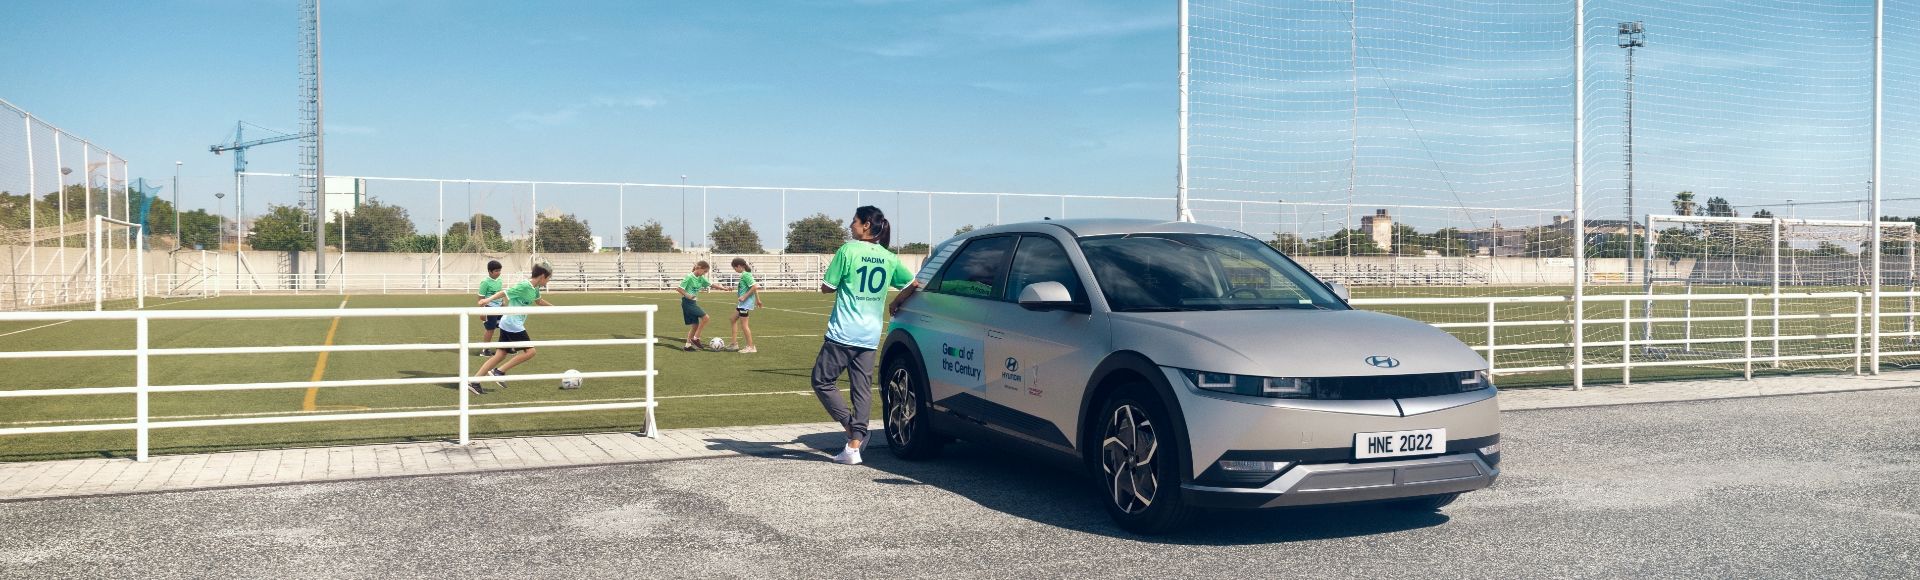 스페인 세비야에 있는 풋볼 마스 재단을 방문한 축구선수 나디아 나딤이 푸른색 Team Century 유니폼을 입고 IONIQ 5에 기대어 축구장에 있는 어린이들을 바라보는 모습입니다. 